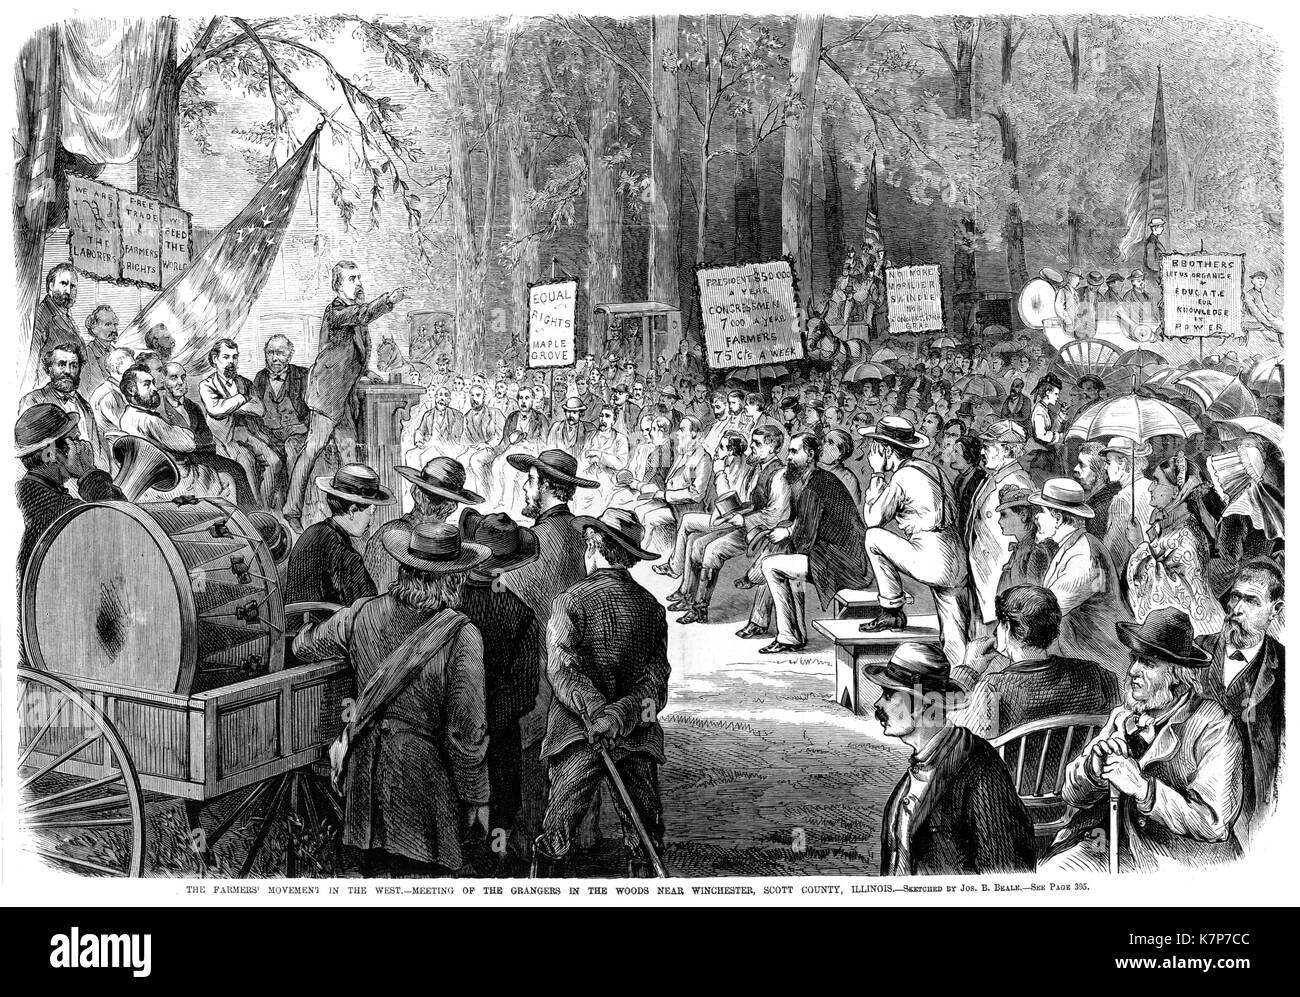 El movimiento campesino en el Oeste - Ilustración de una reunión Grangers en Illinois rural de Frank Leslie ilustrado del periódico, Wincester, Illinois, 1873. Foto de stock